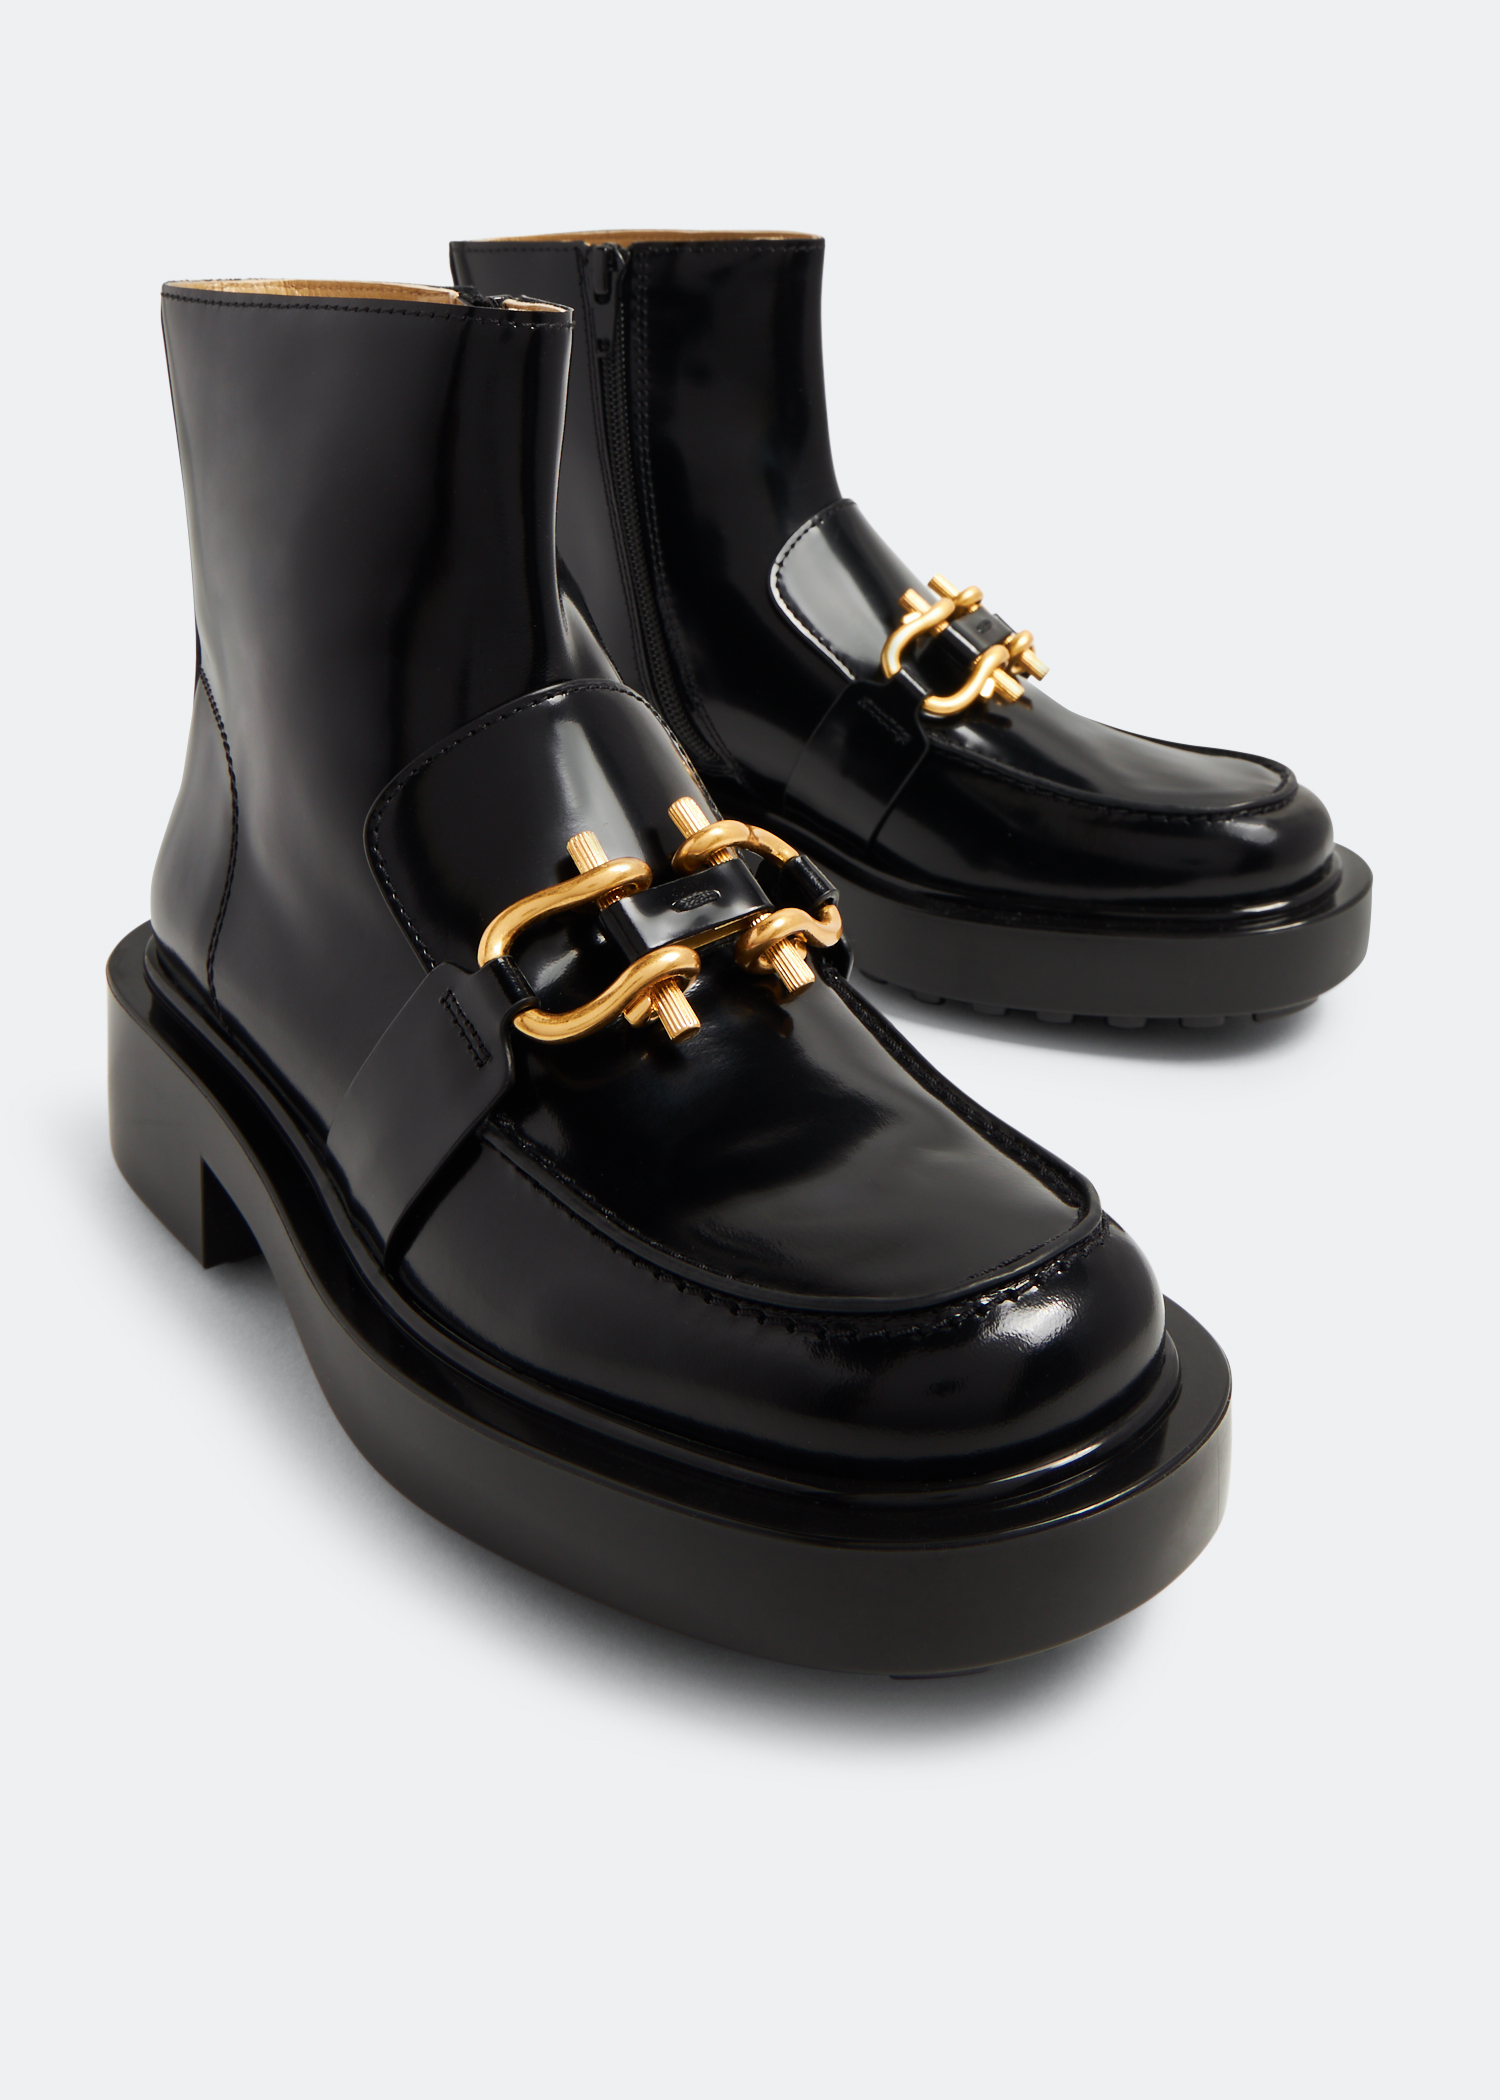 Bottega Veneta Monsieur chunky ankle boots for Women - Black in